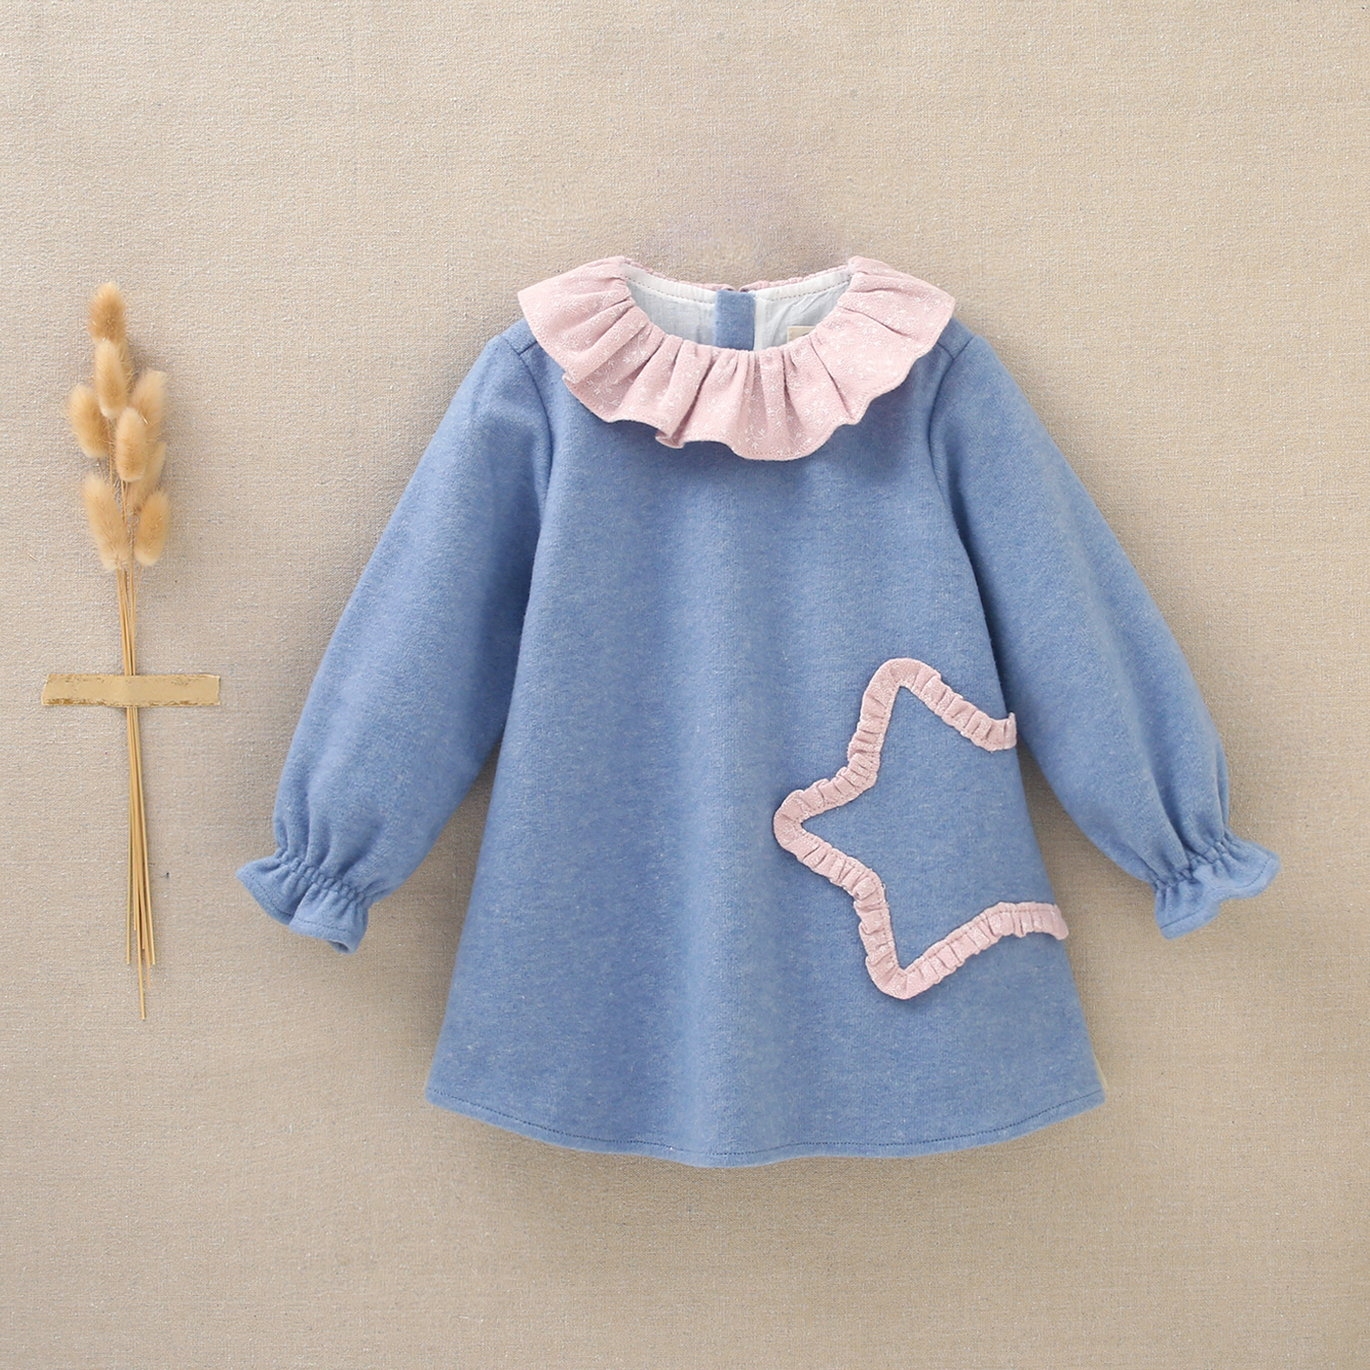 Imagen de Vestido de bebé niña azul con cuello volante rosa y bordado de estrella